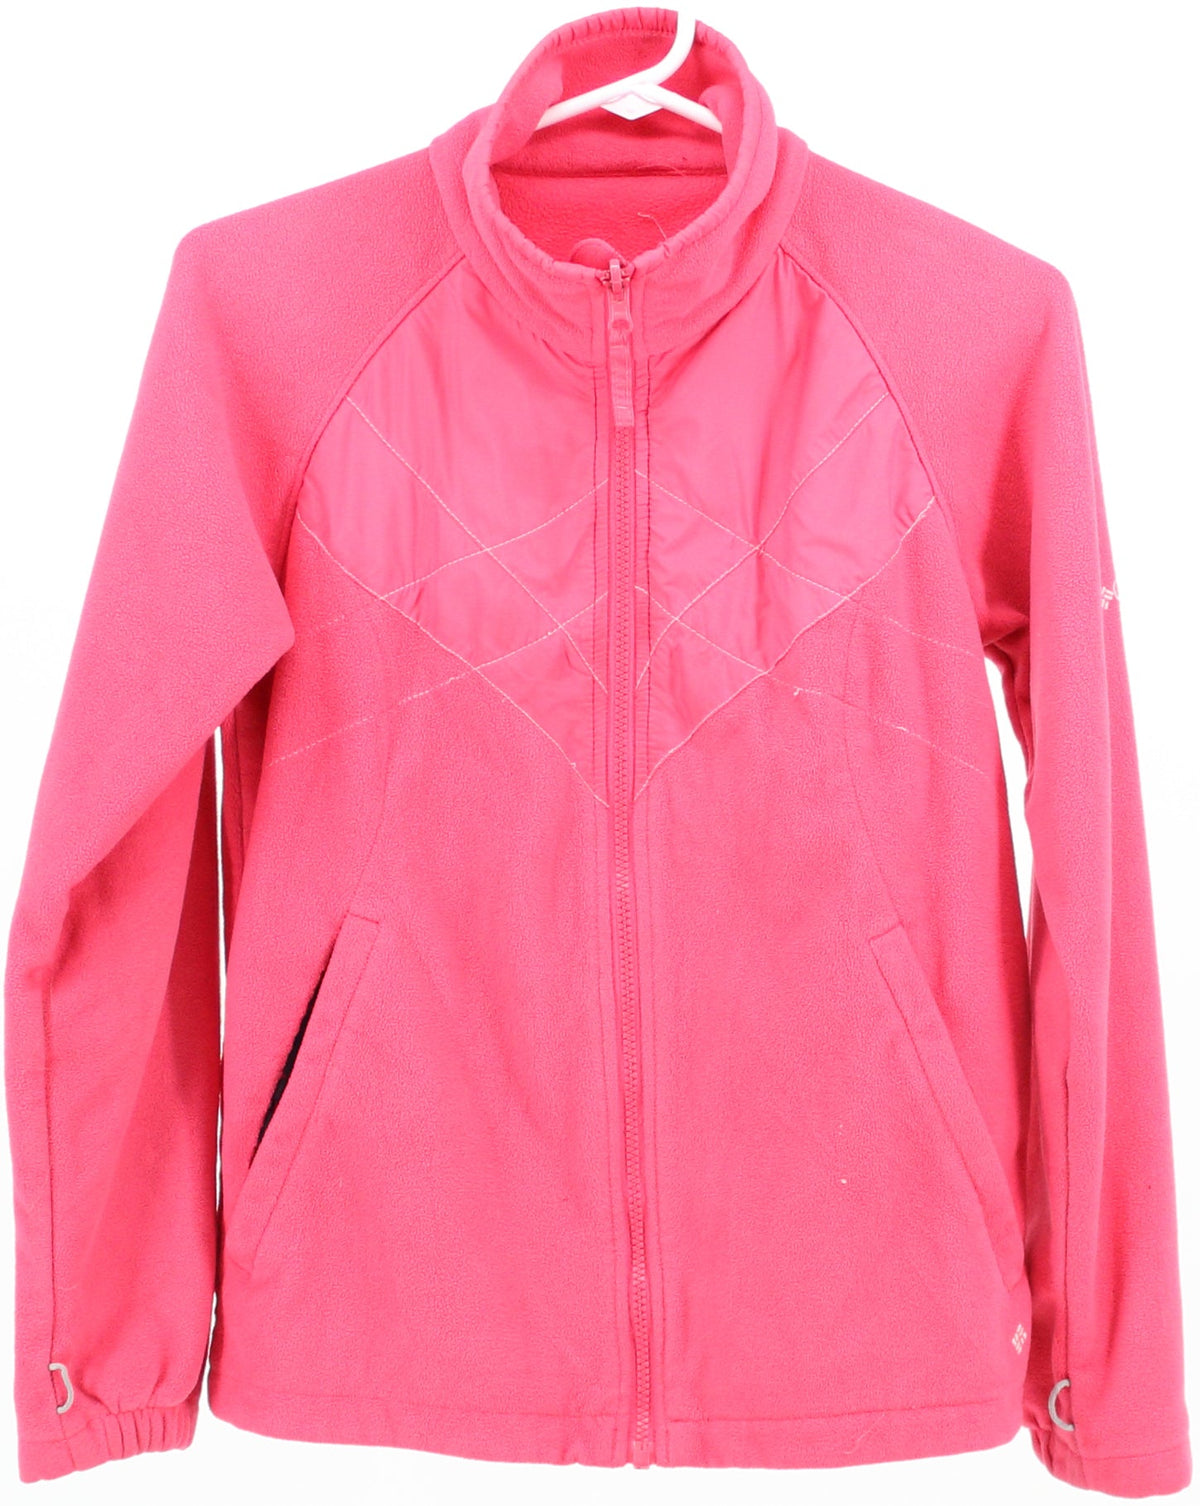 Columbia Bugaboo Pink Fleece Jacket with Nylon Matelasse on Chest